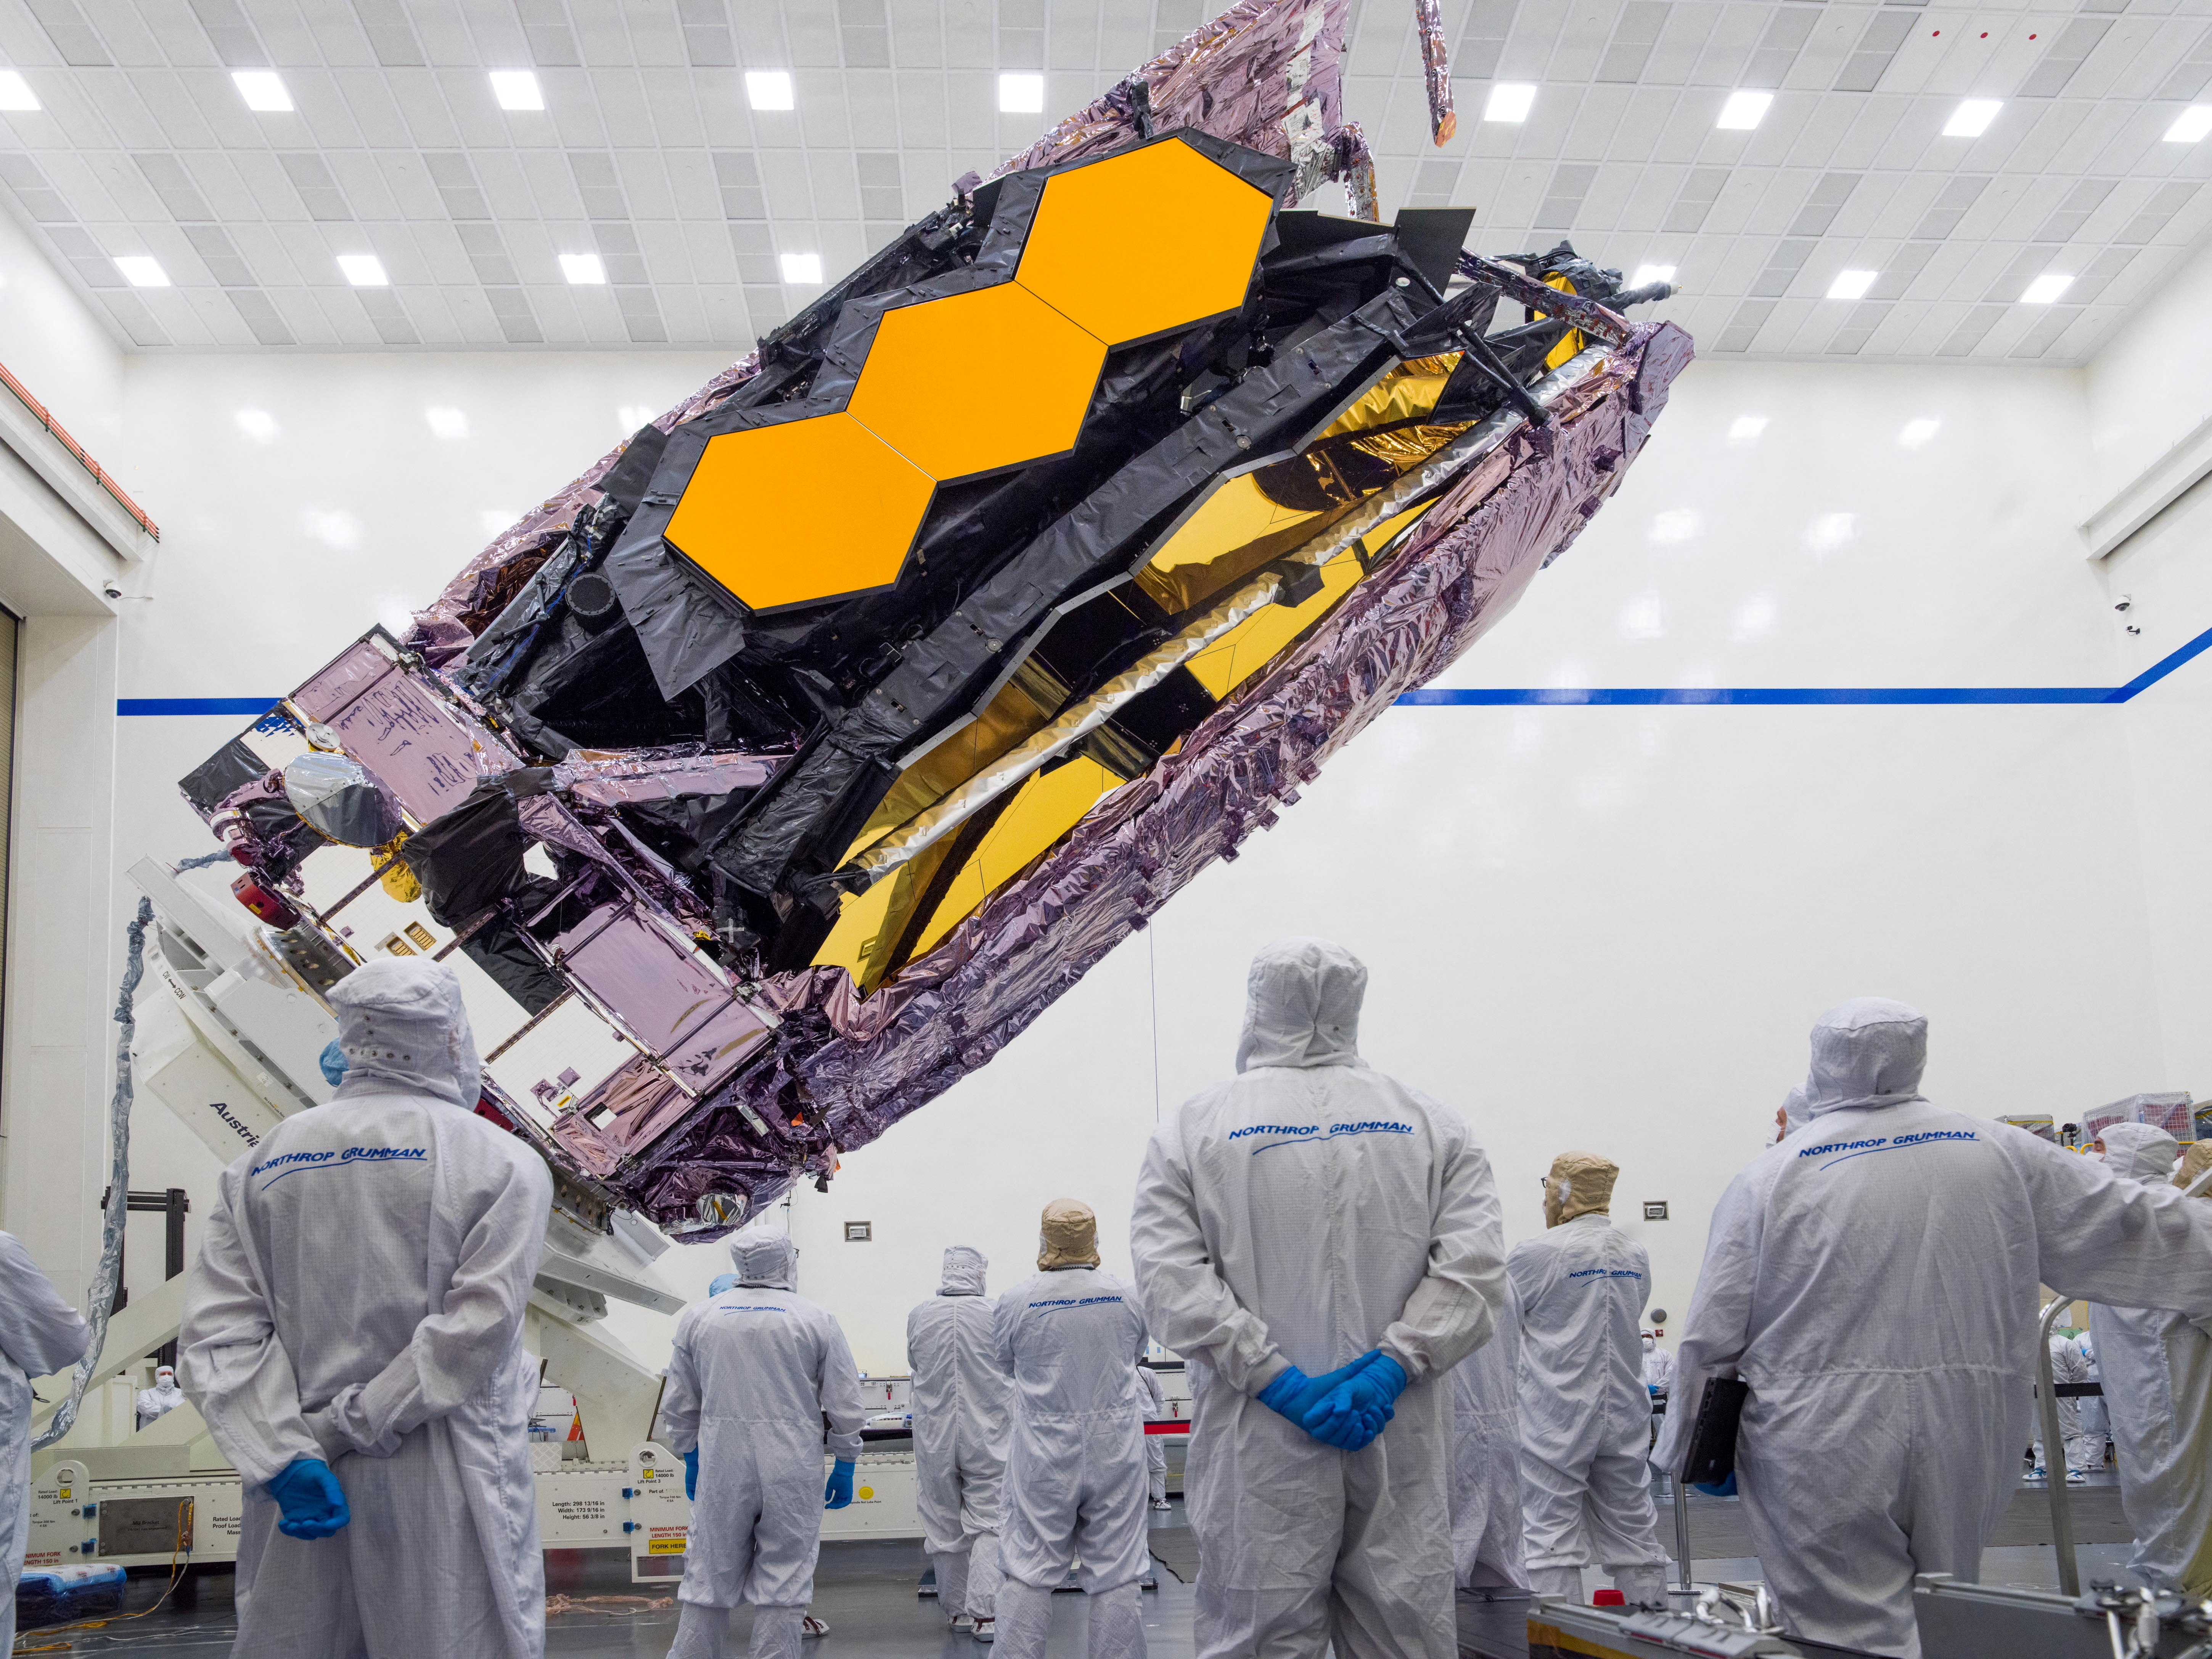 El telescopio James Webb, cuyo coste para la NASA asciende a unos 10.000 millones de dólares, es uno de los equipos científicos más caros jamás construidos (REUTERS)